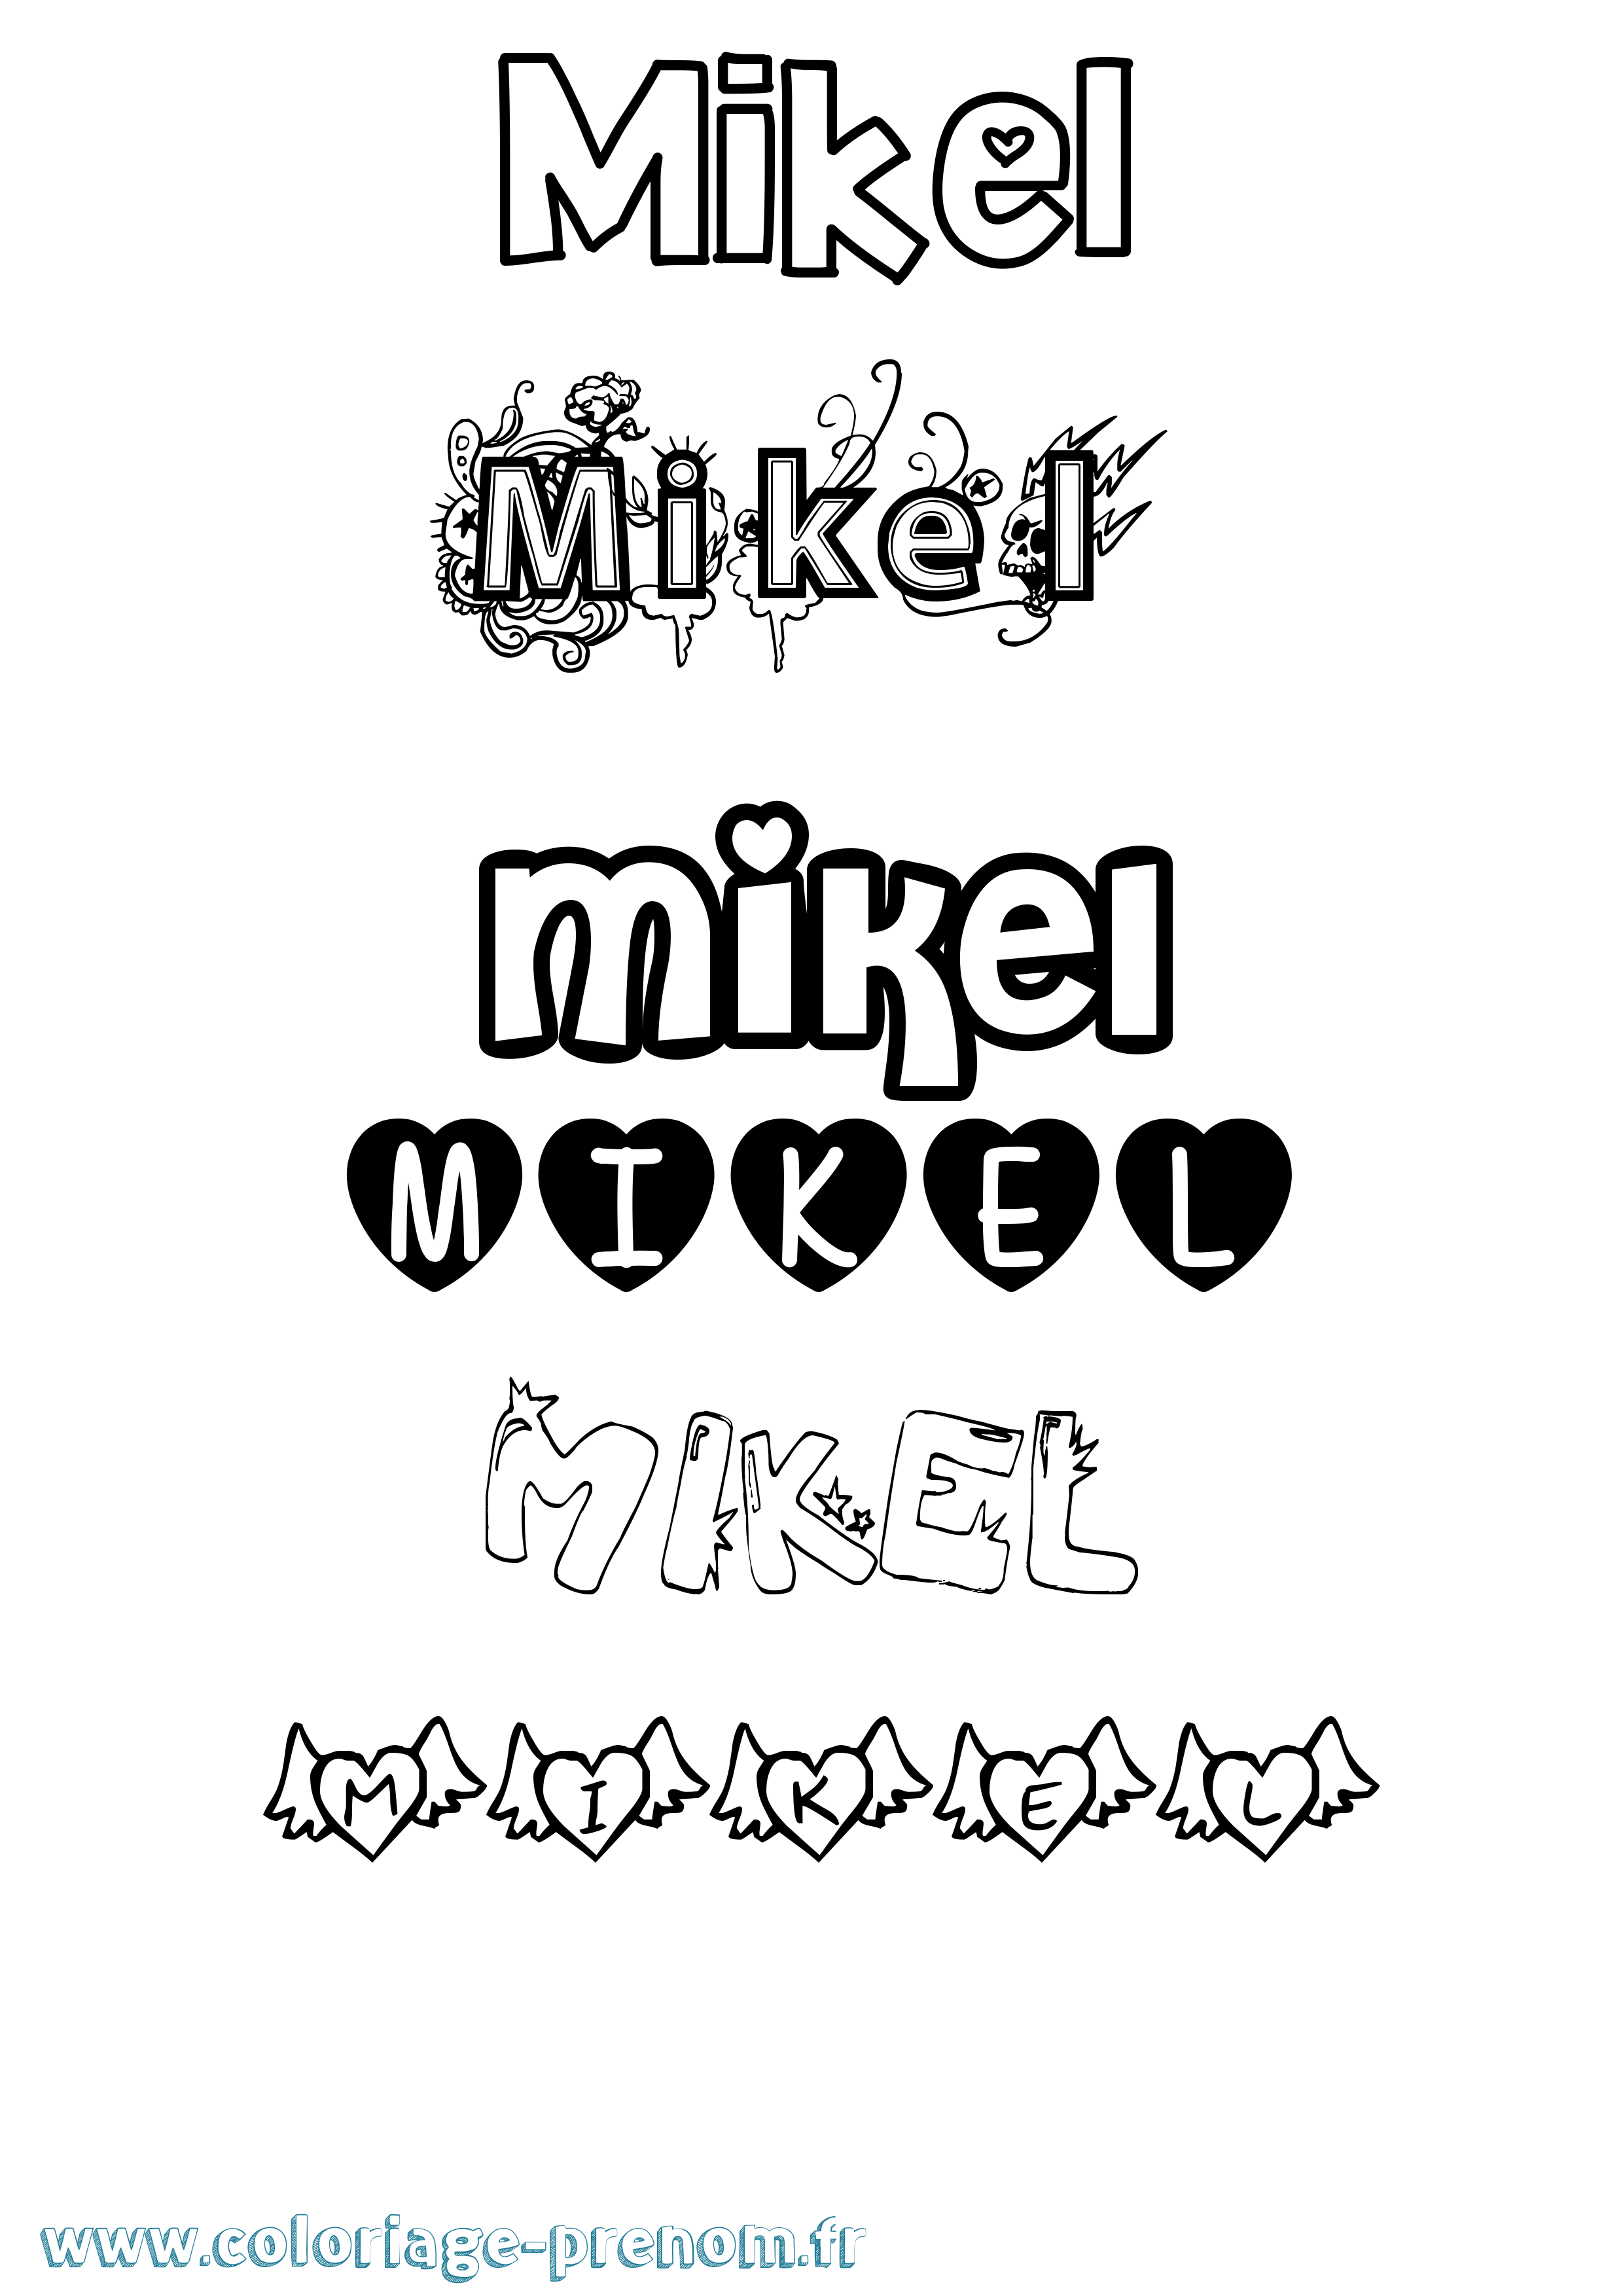 Coloriage prénom Mikel Girly